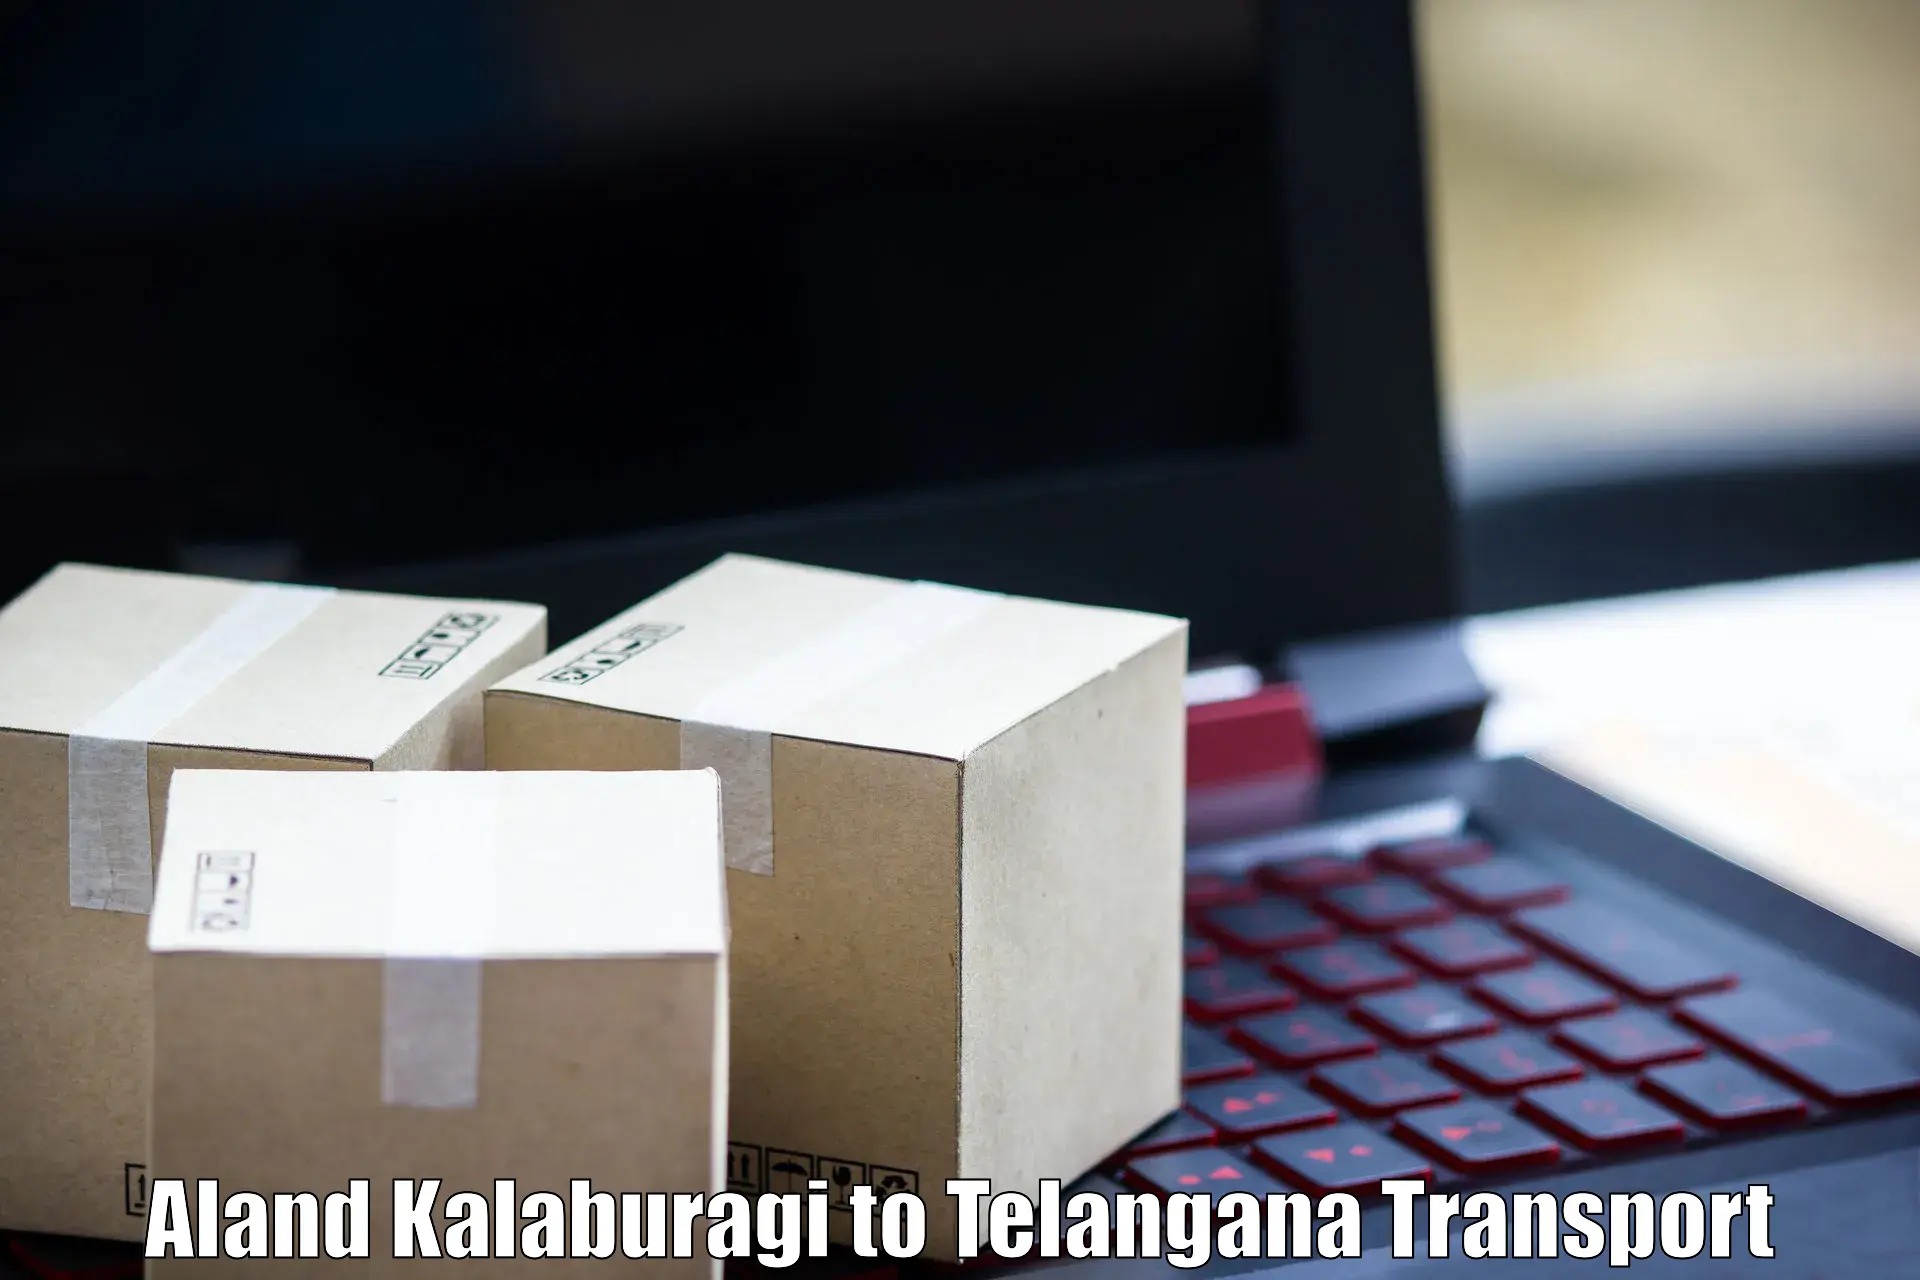 Vehicle parcel service Aland Kalaburagi to Yerrupalem